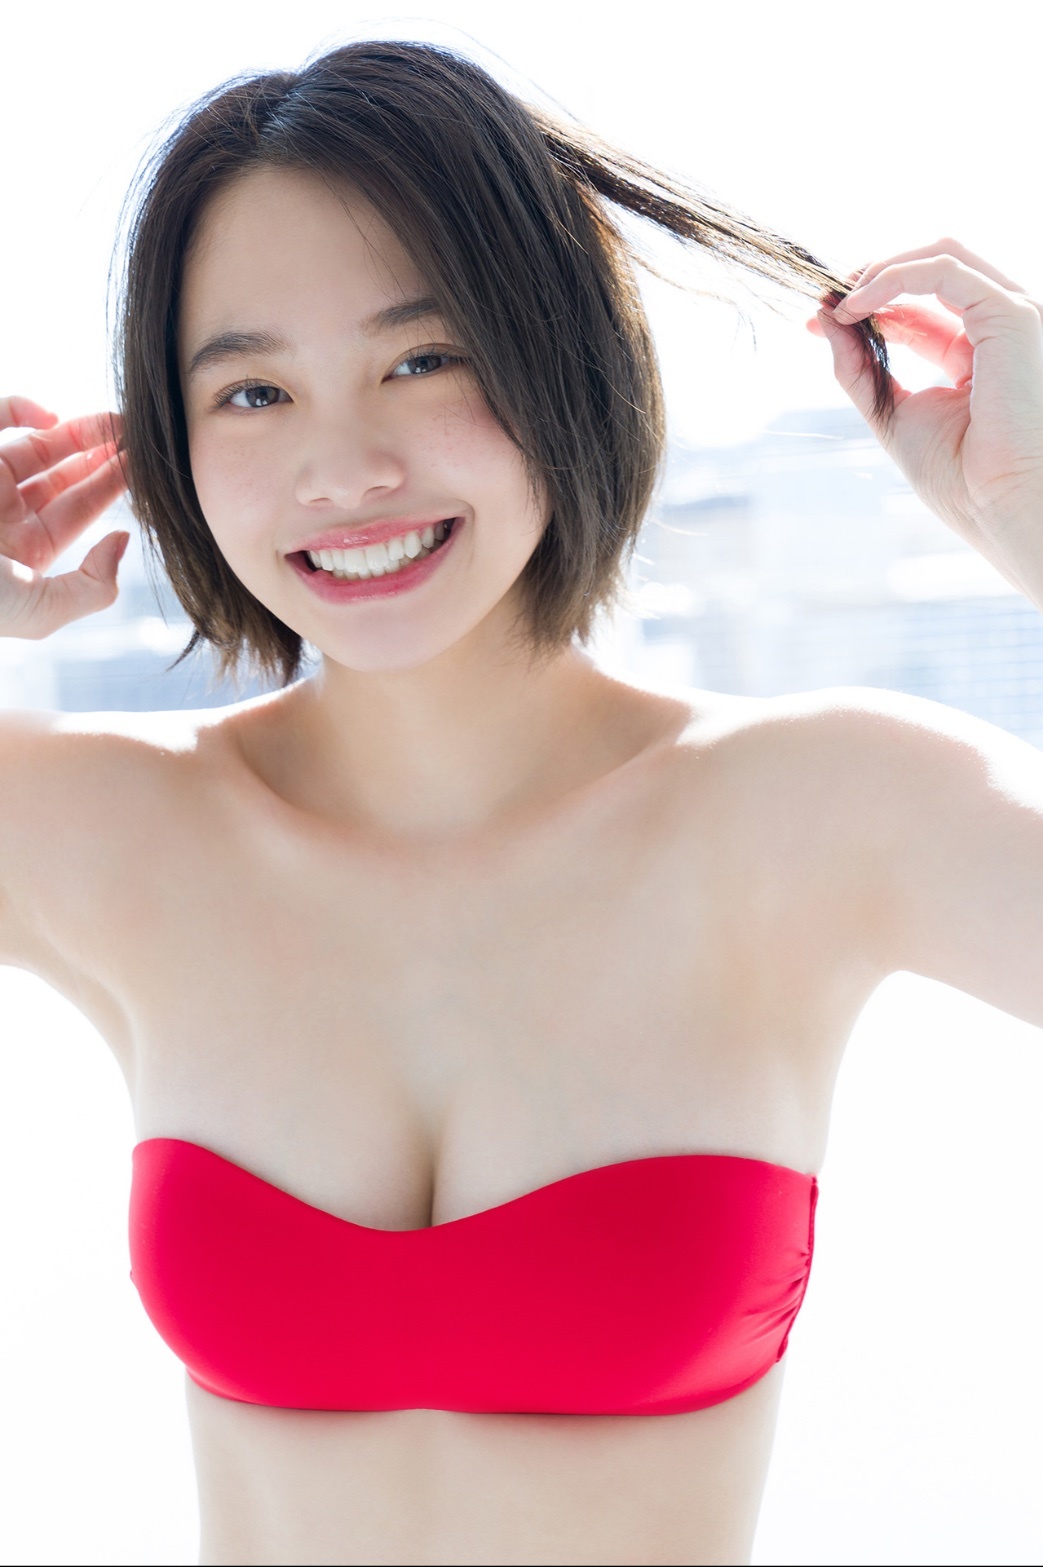 甜甜一笑，心情轉好！18 歲嫩妹「新田步凪」比基尼解放纖腰、事業線